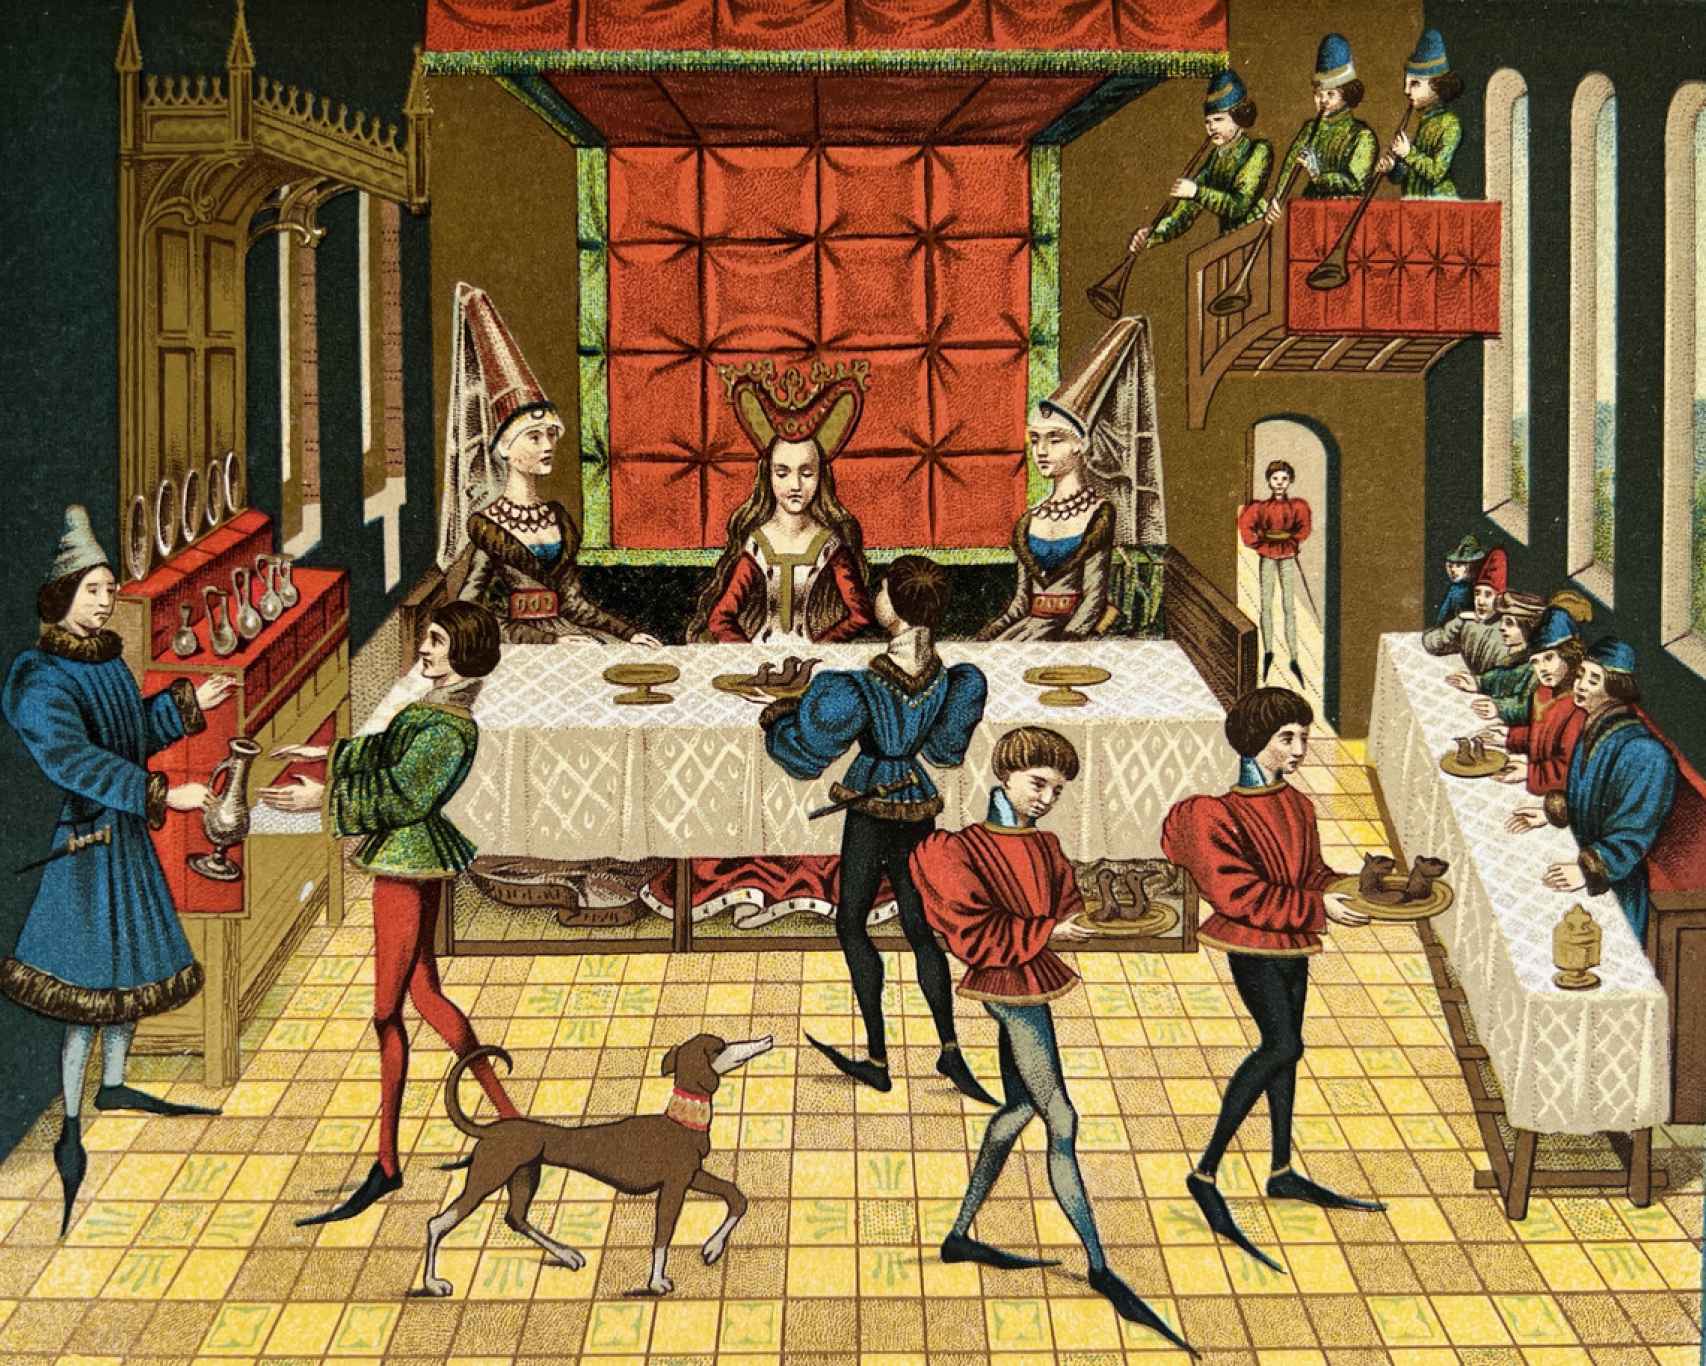 Un banquete medieval.